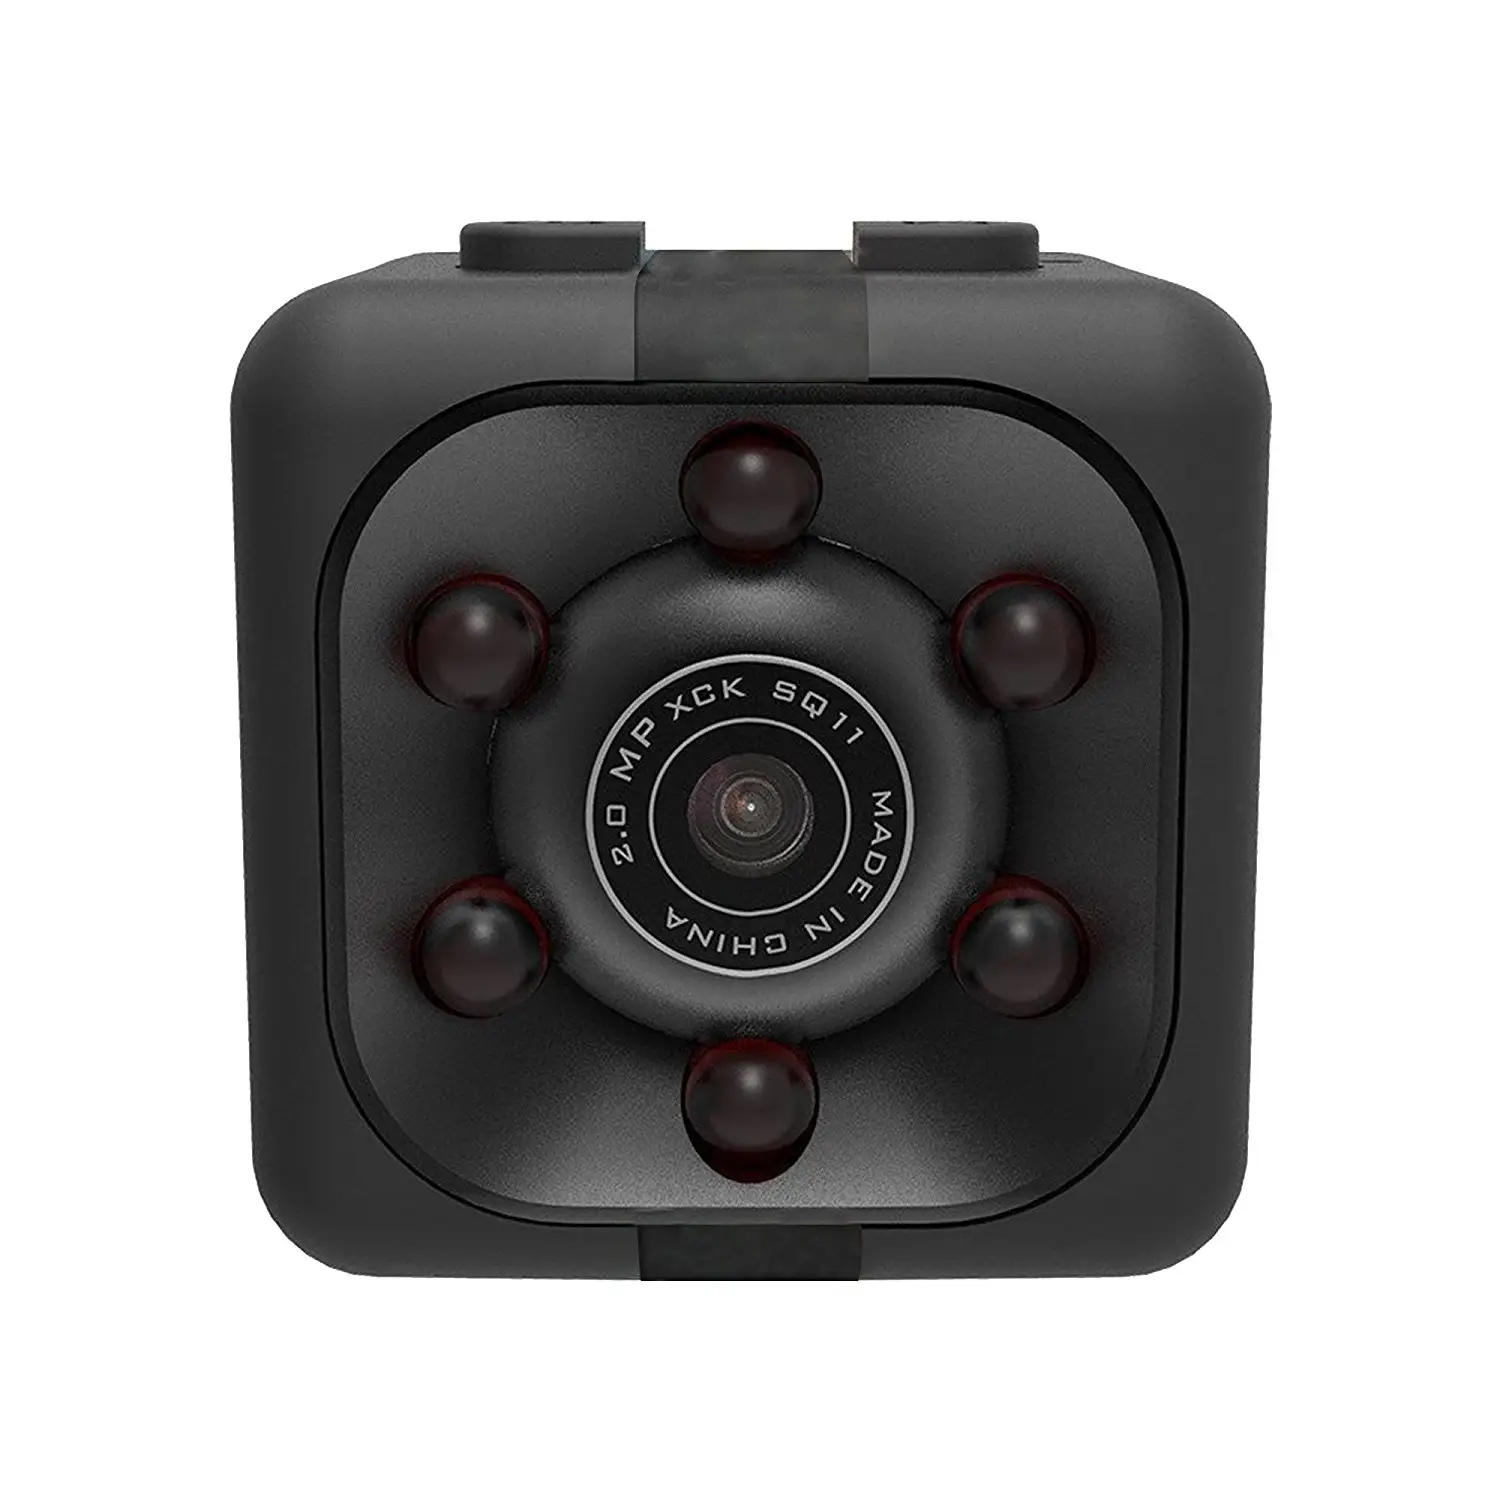 2020 toptan orijinal gece görüş mini kamera SQ8 Full hd mini yüksek çözünürlüklü görüntüler dv spor kamera